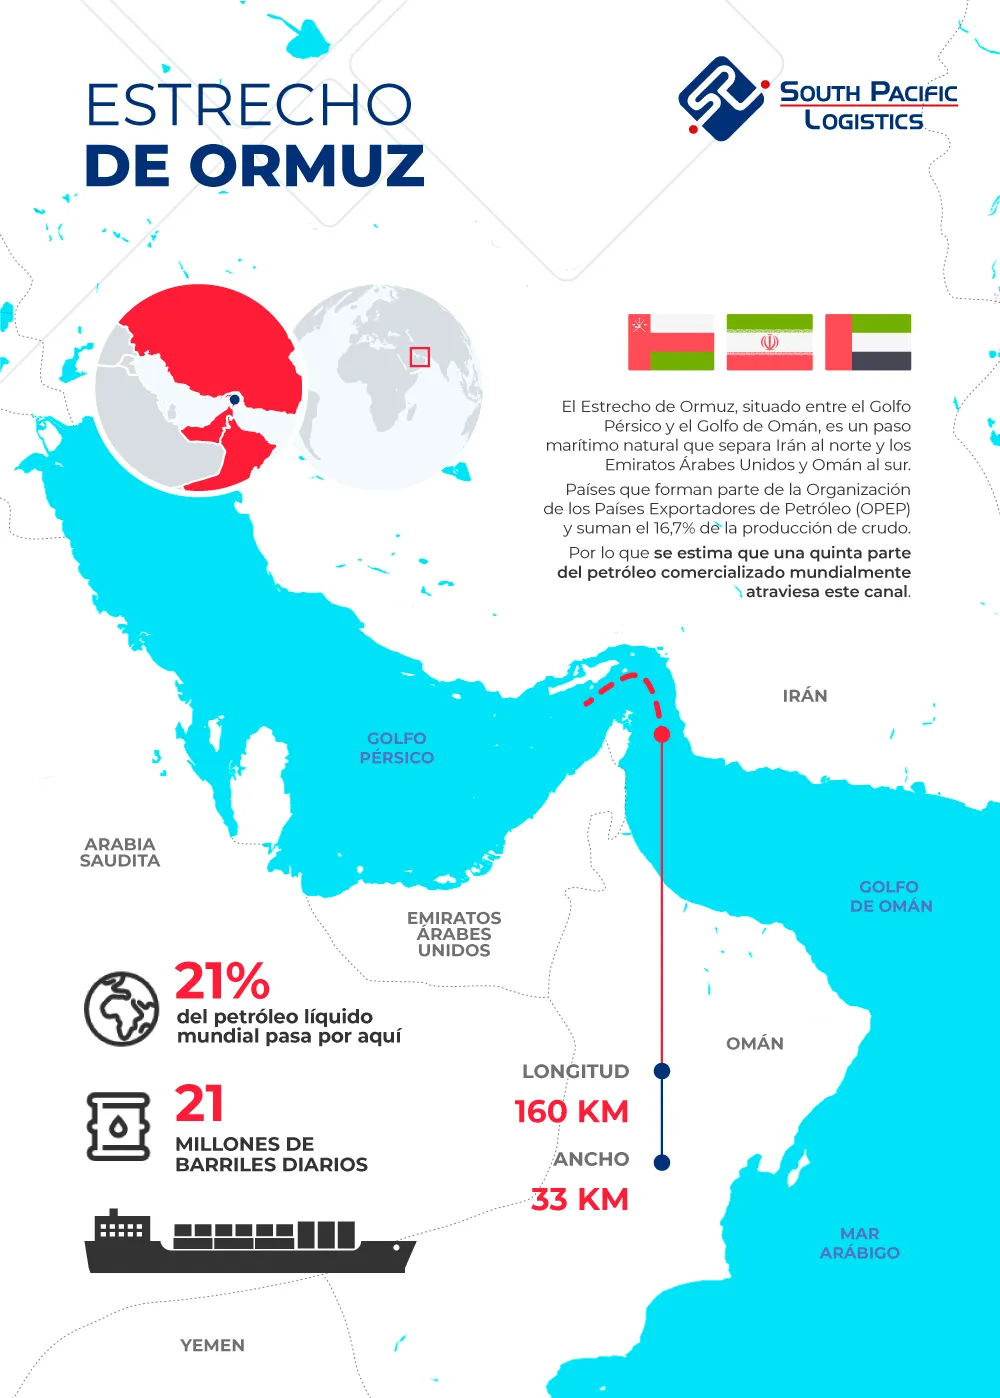 Infografia sobre el Estrecho de Ormuz y su importancia para el transporte marítimo